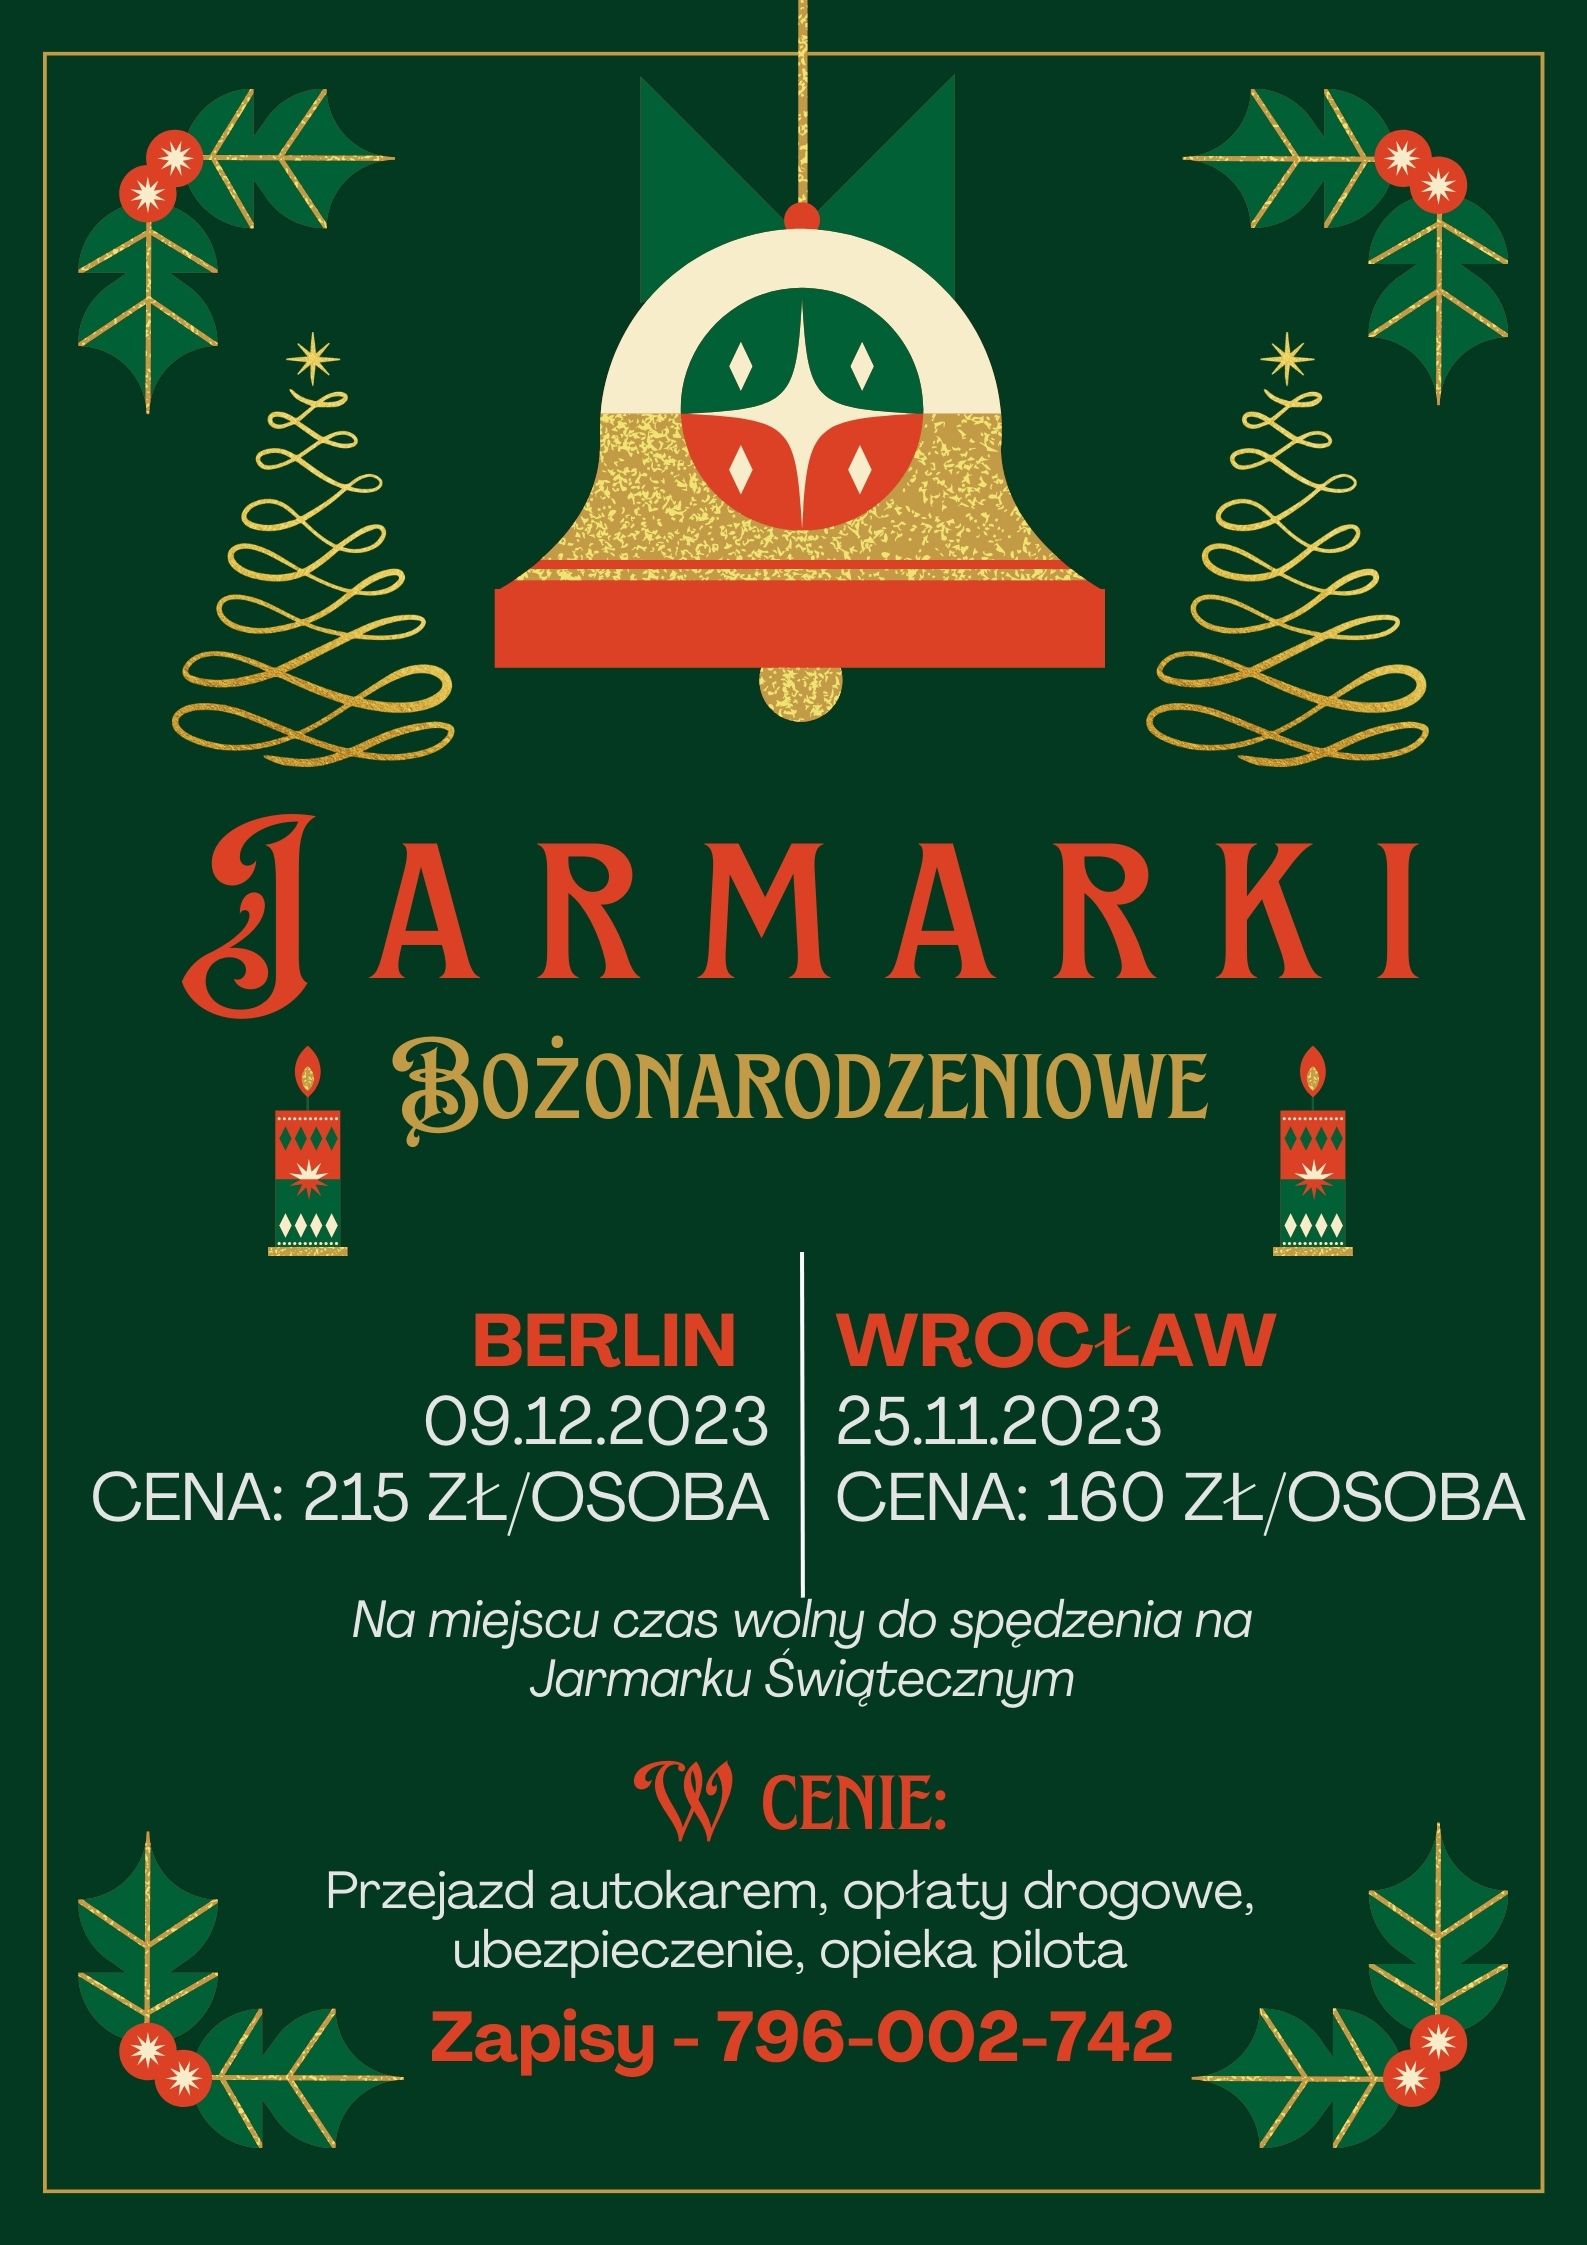 Jarmarki Bożonarodzeniowe Berlin-Wrocław